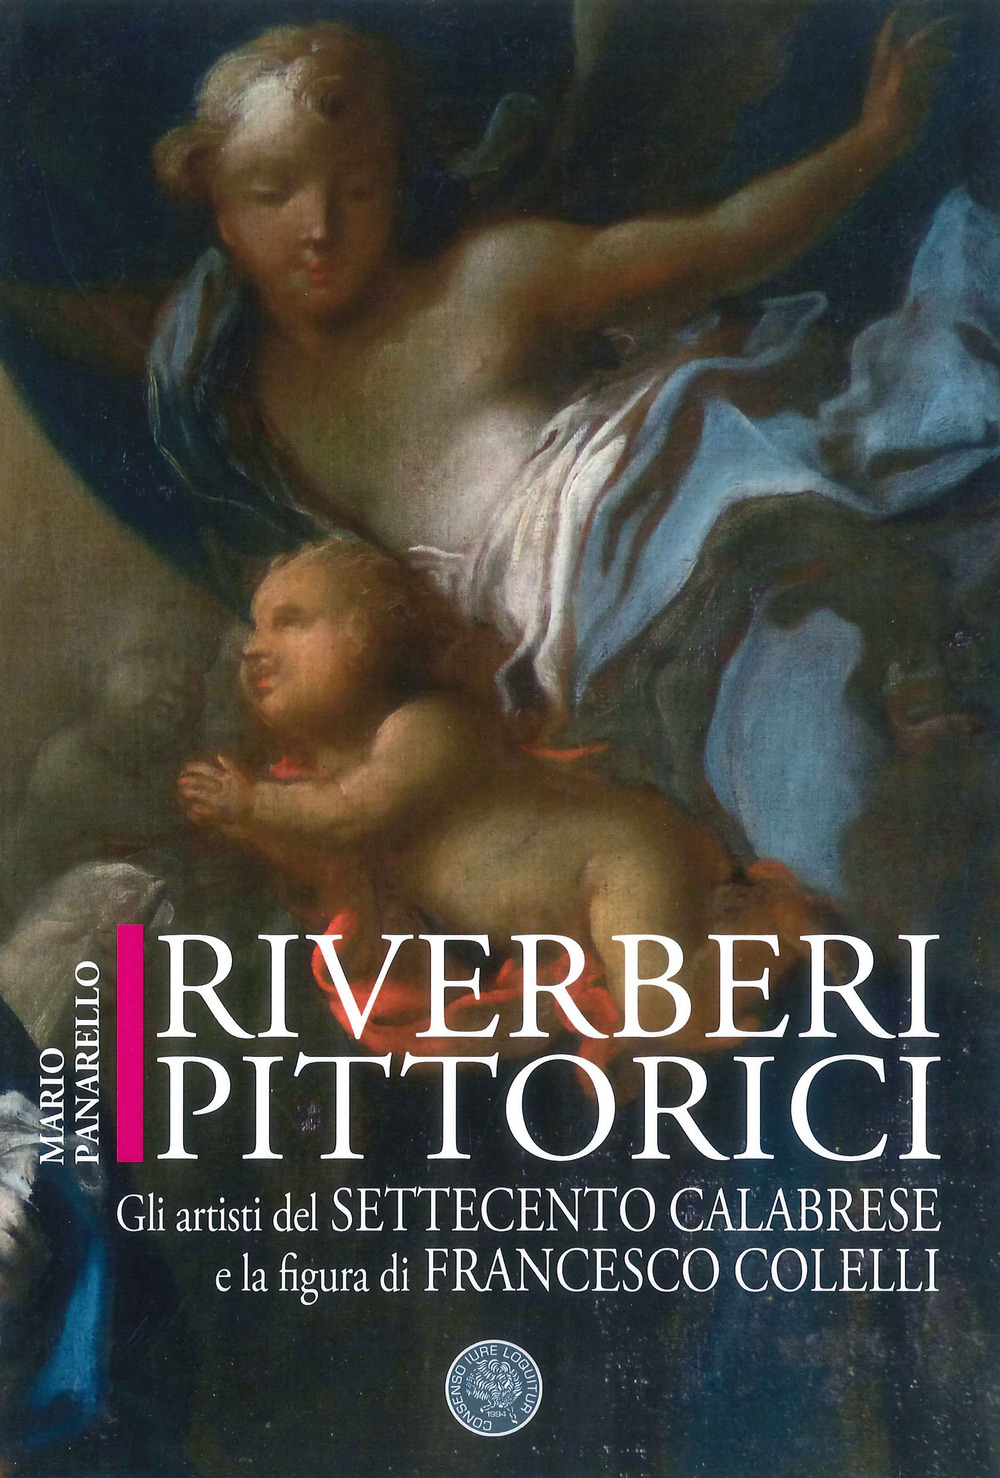 Riverberi pittorici: gli artisti del Settecento calabrese e la figura di Francesco Colelli